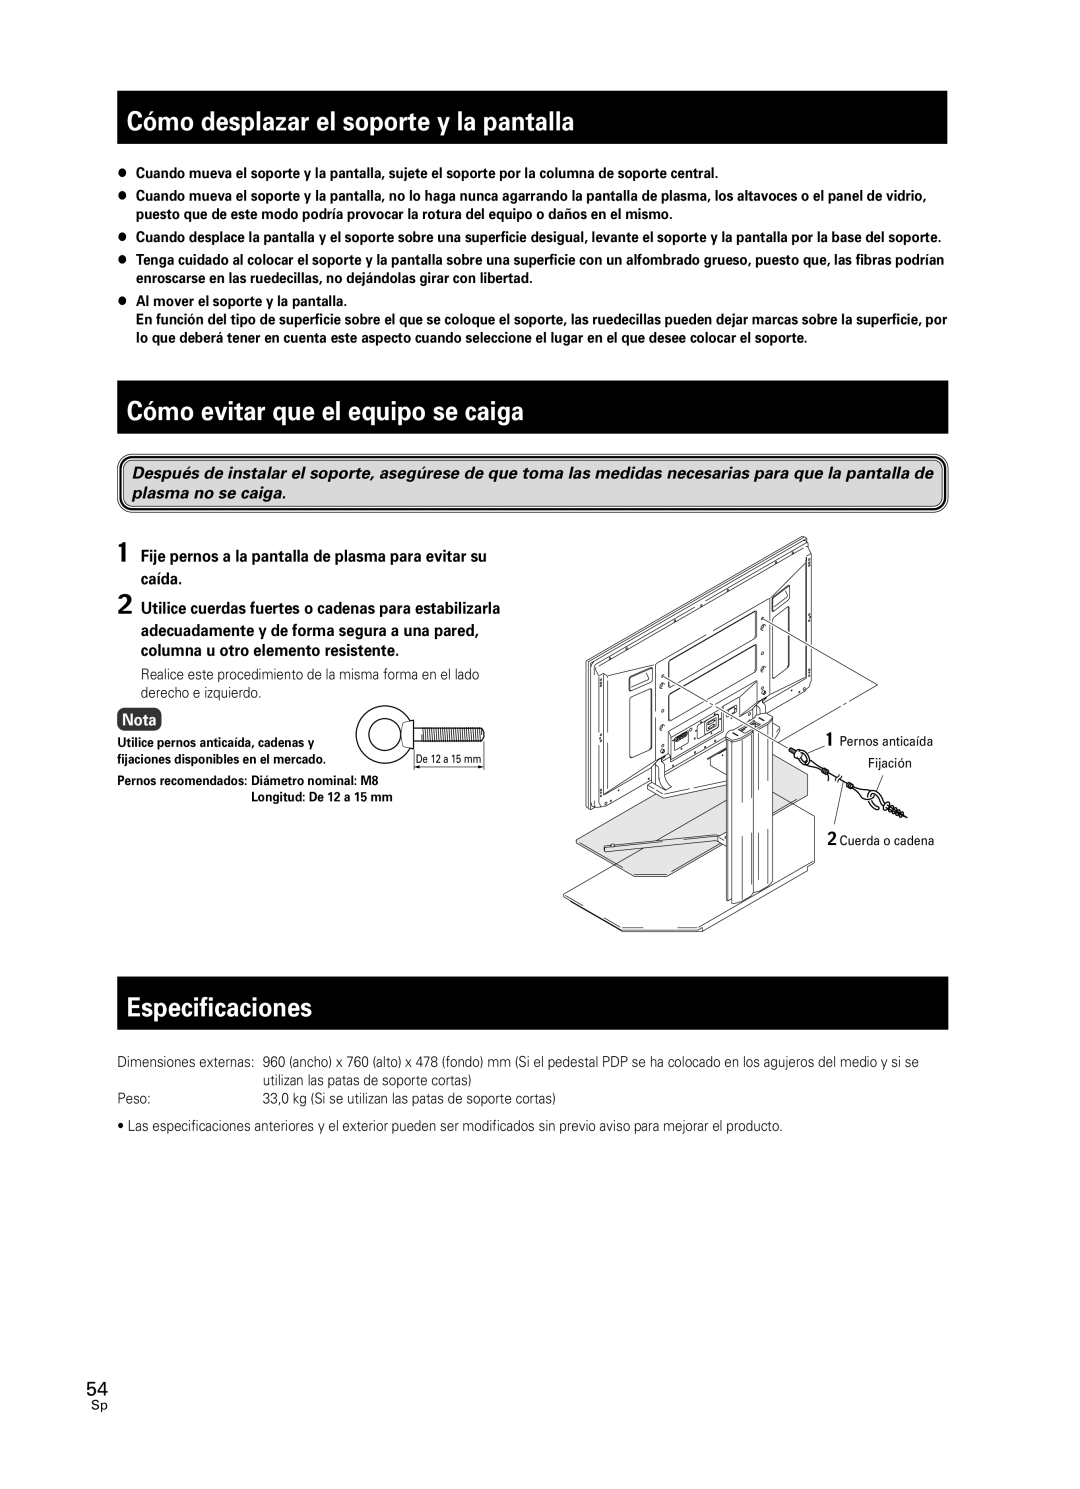 Pioneer PDK-FS05 manual Cómo desplazar el soporte y la pantalla, Cómo evitar que el equipo se caiga, Especificaciones, Nota 